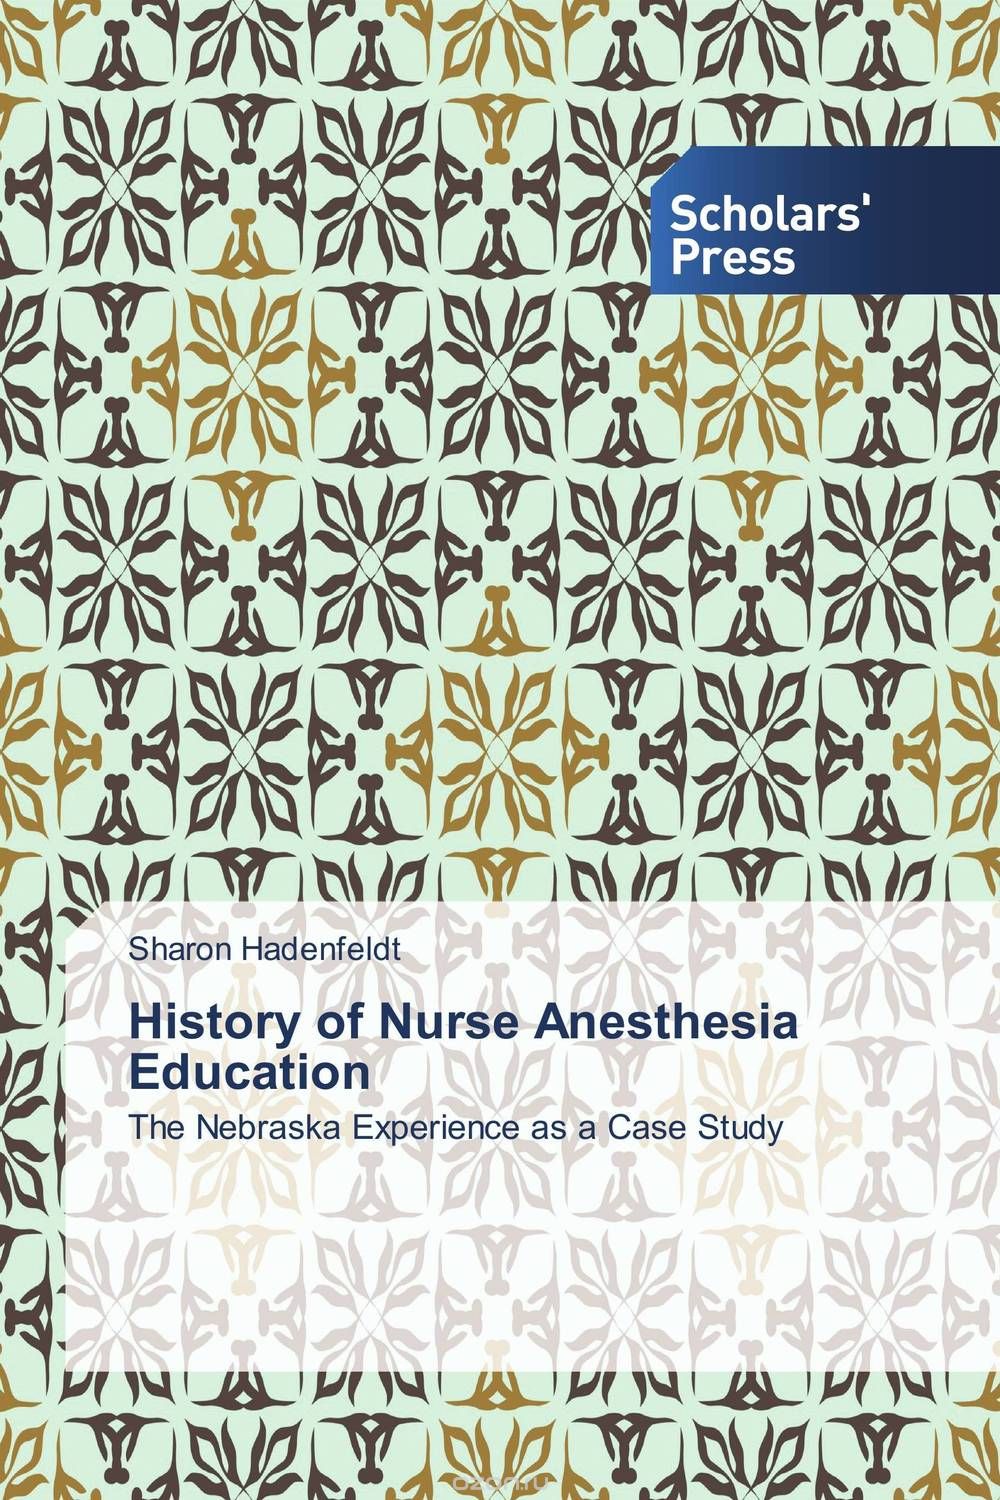 Скачать книгу "History of Nurse Anesthesia Education"